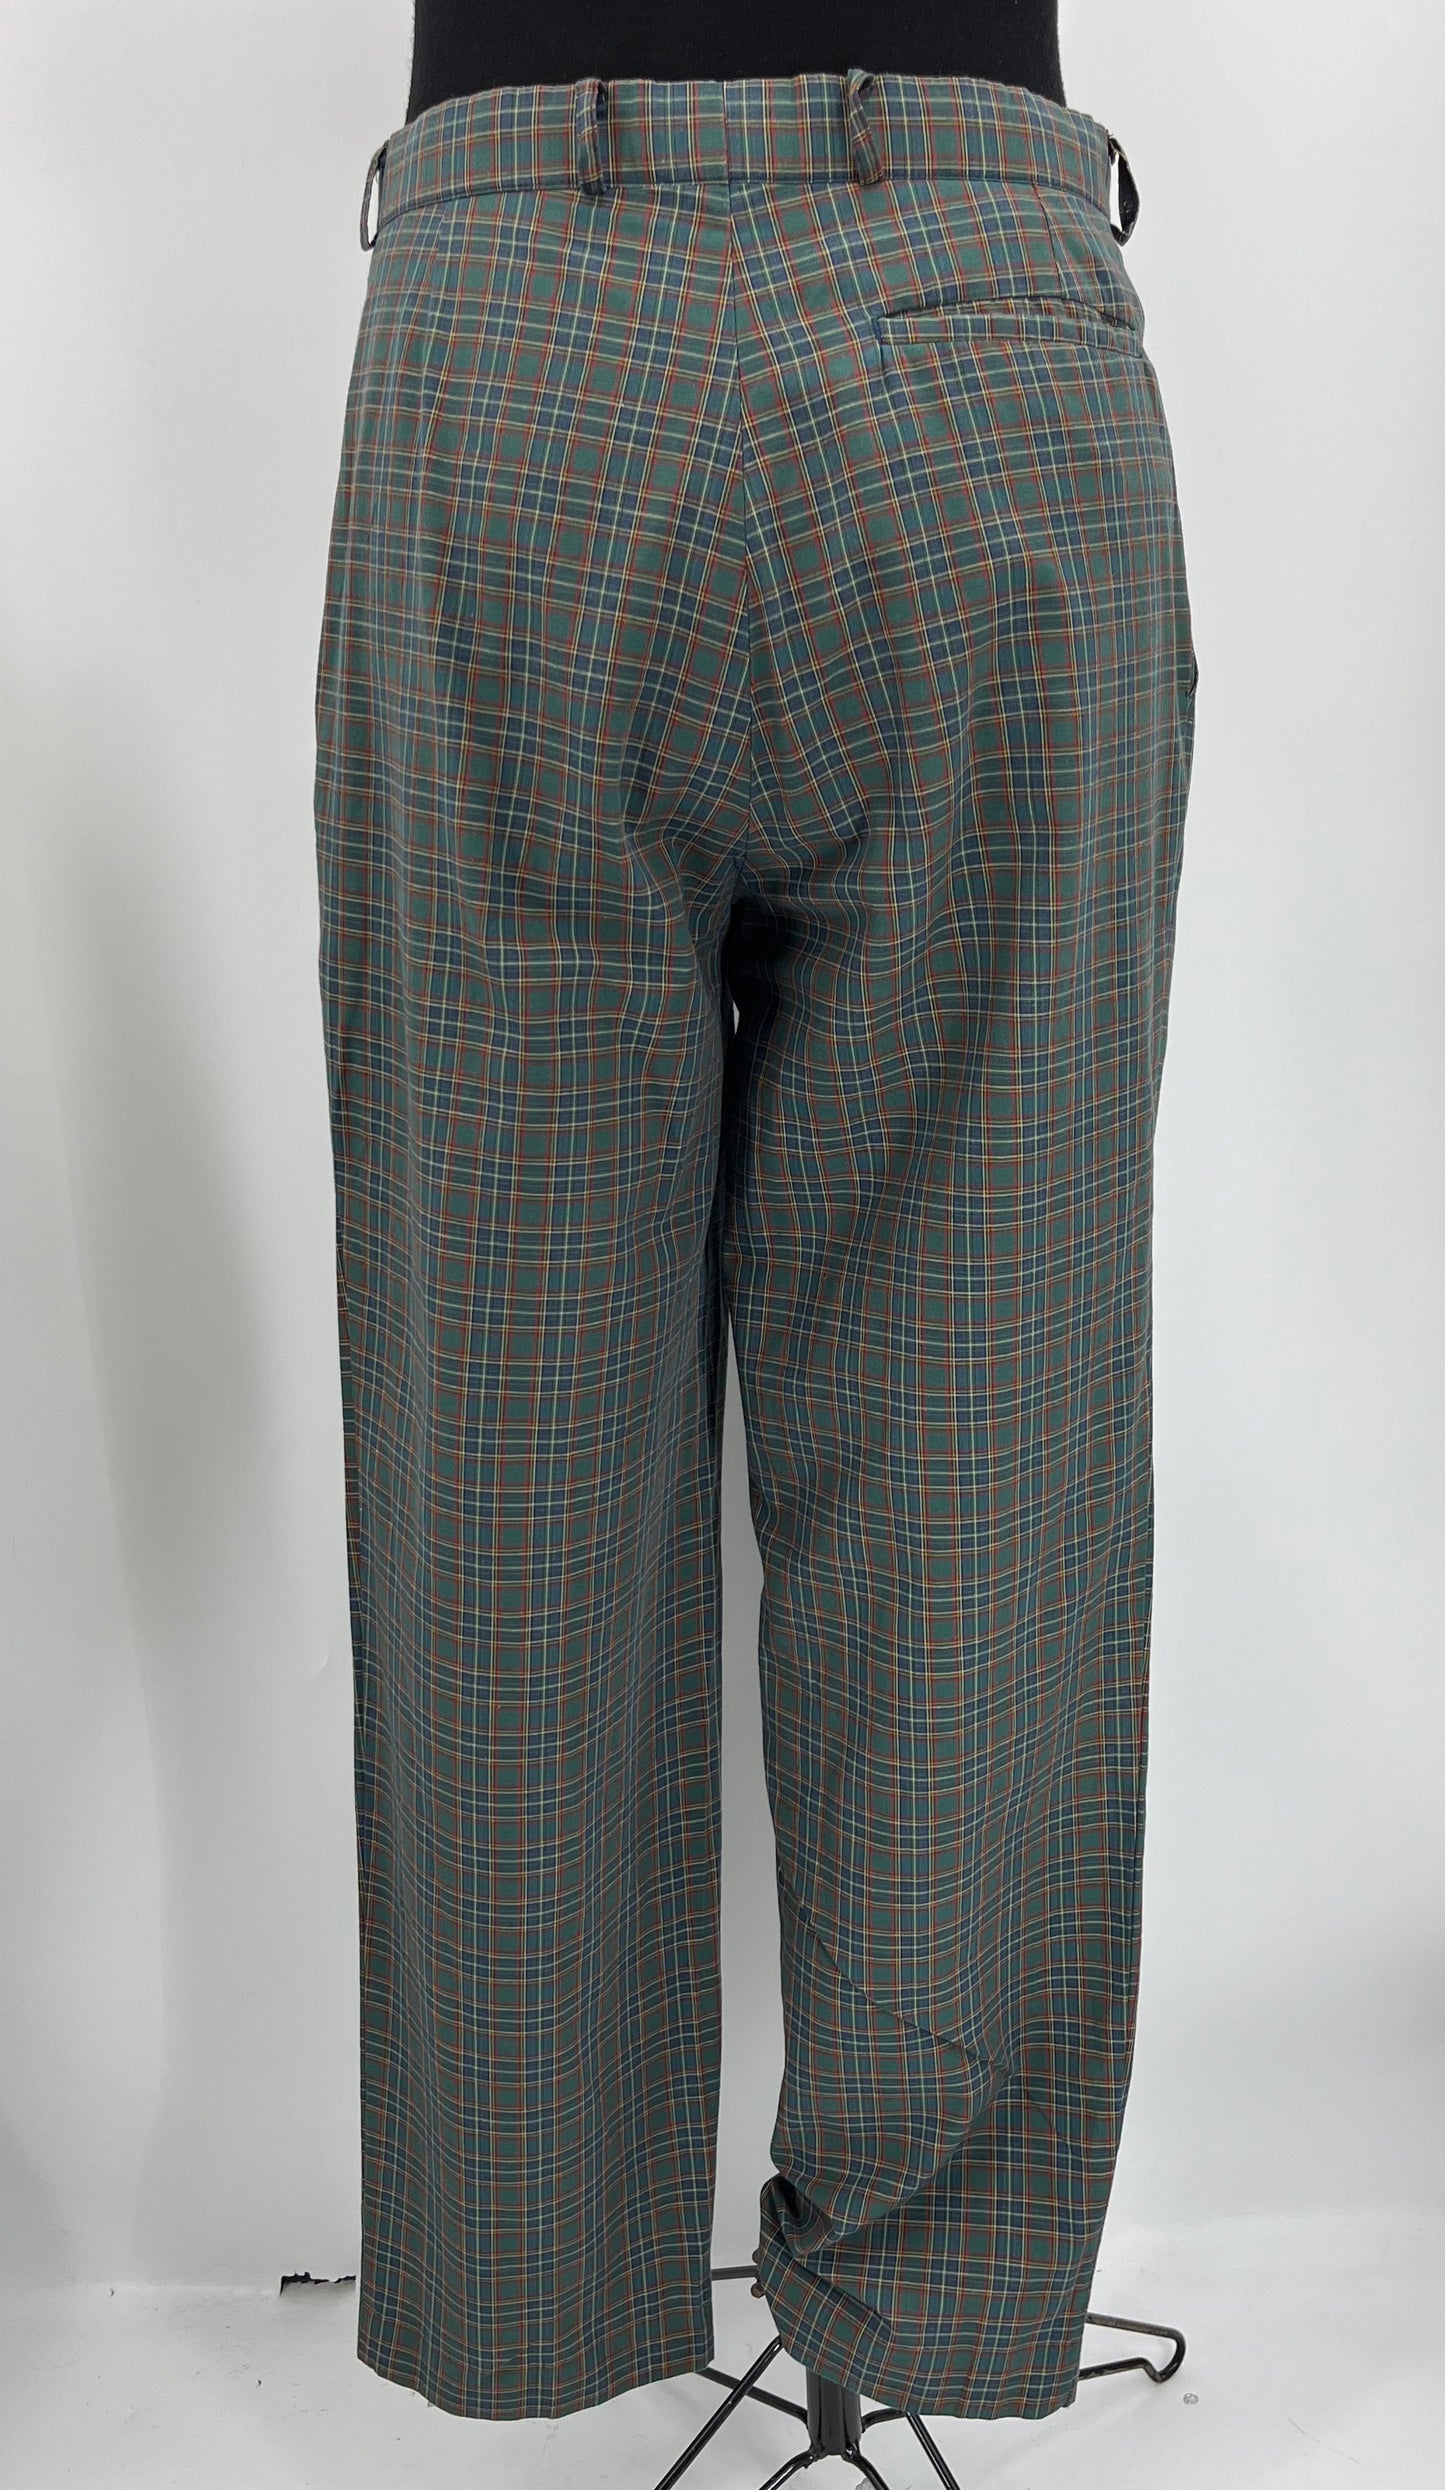 Terinit, miesten ruudulliset golf-housut, 90-luku, vyöt.ymp. 80cm, kokoarvio S